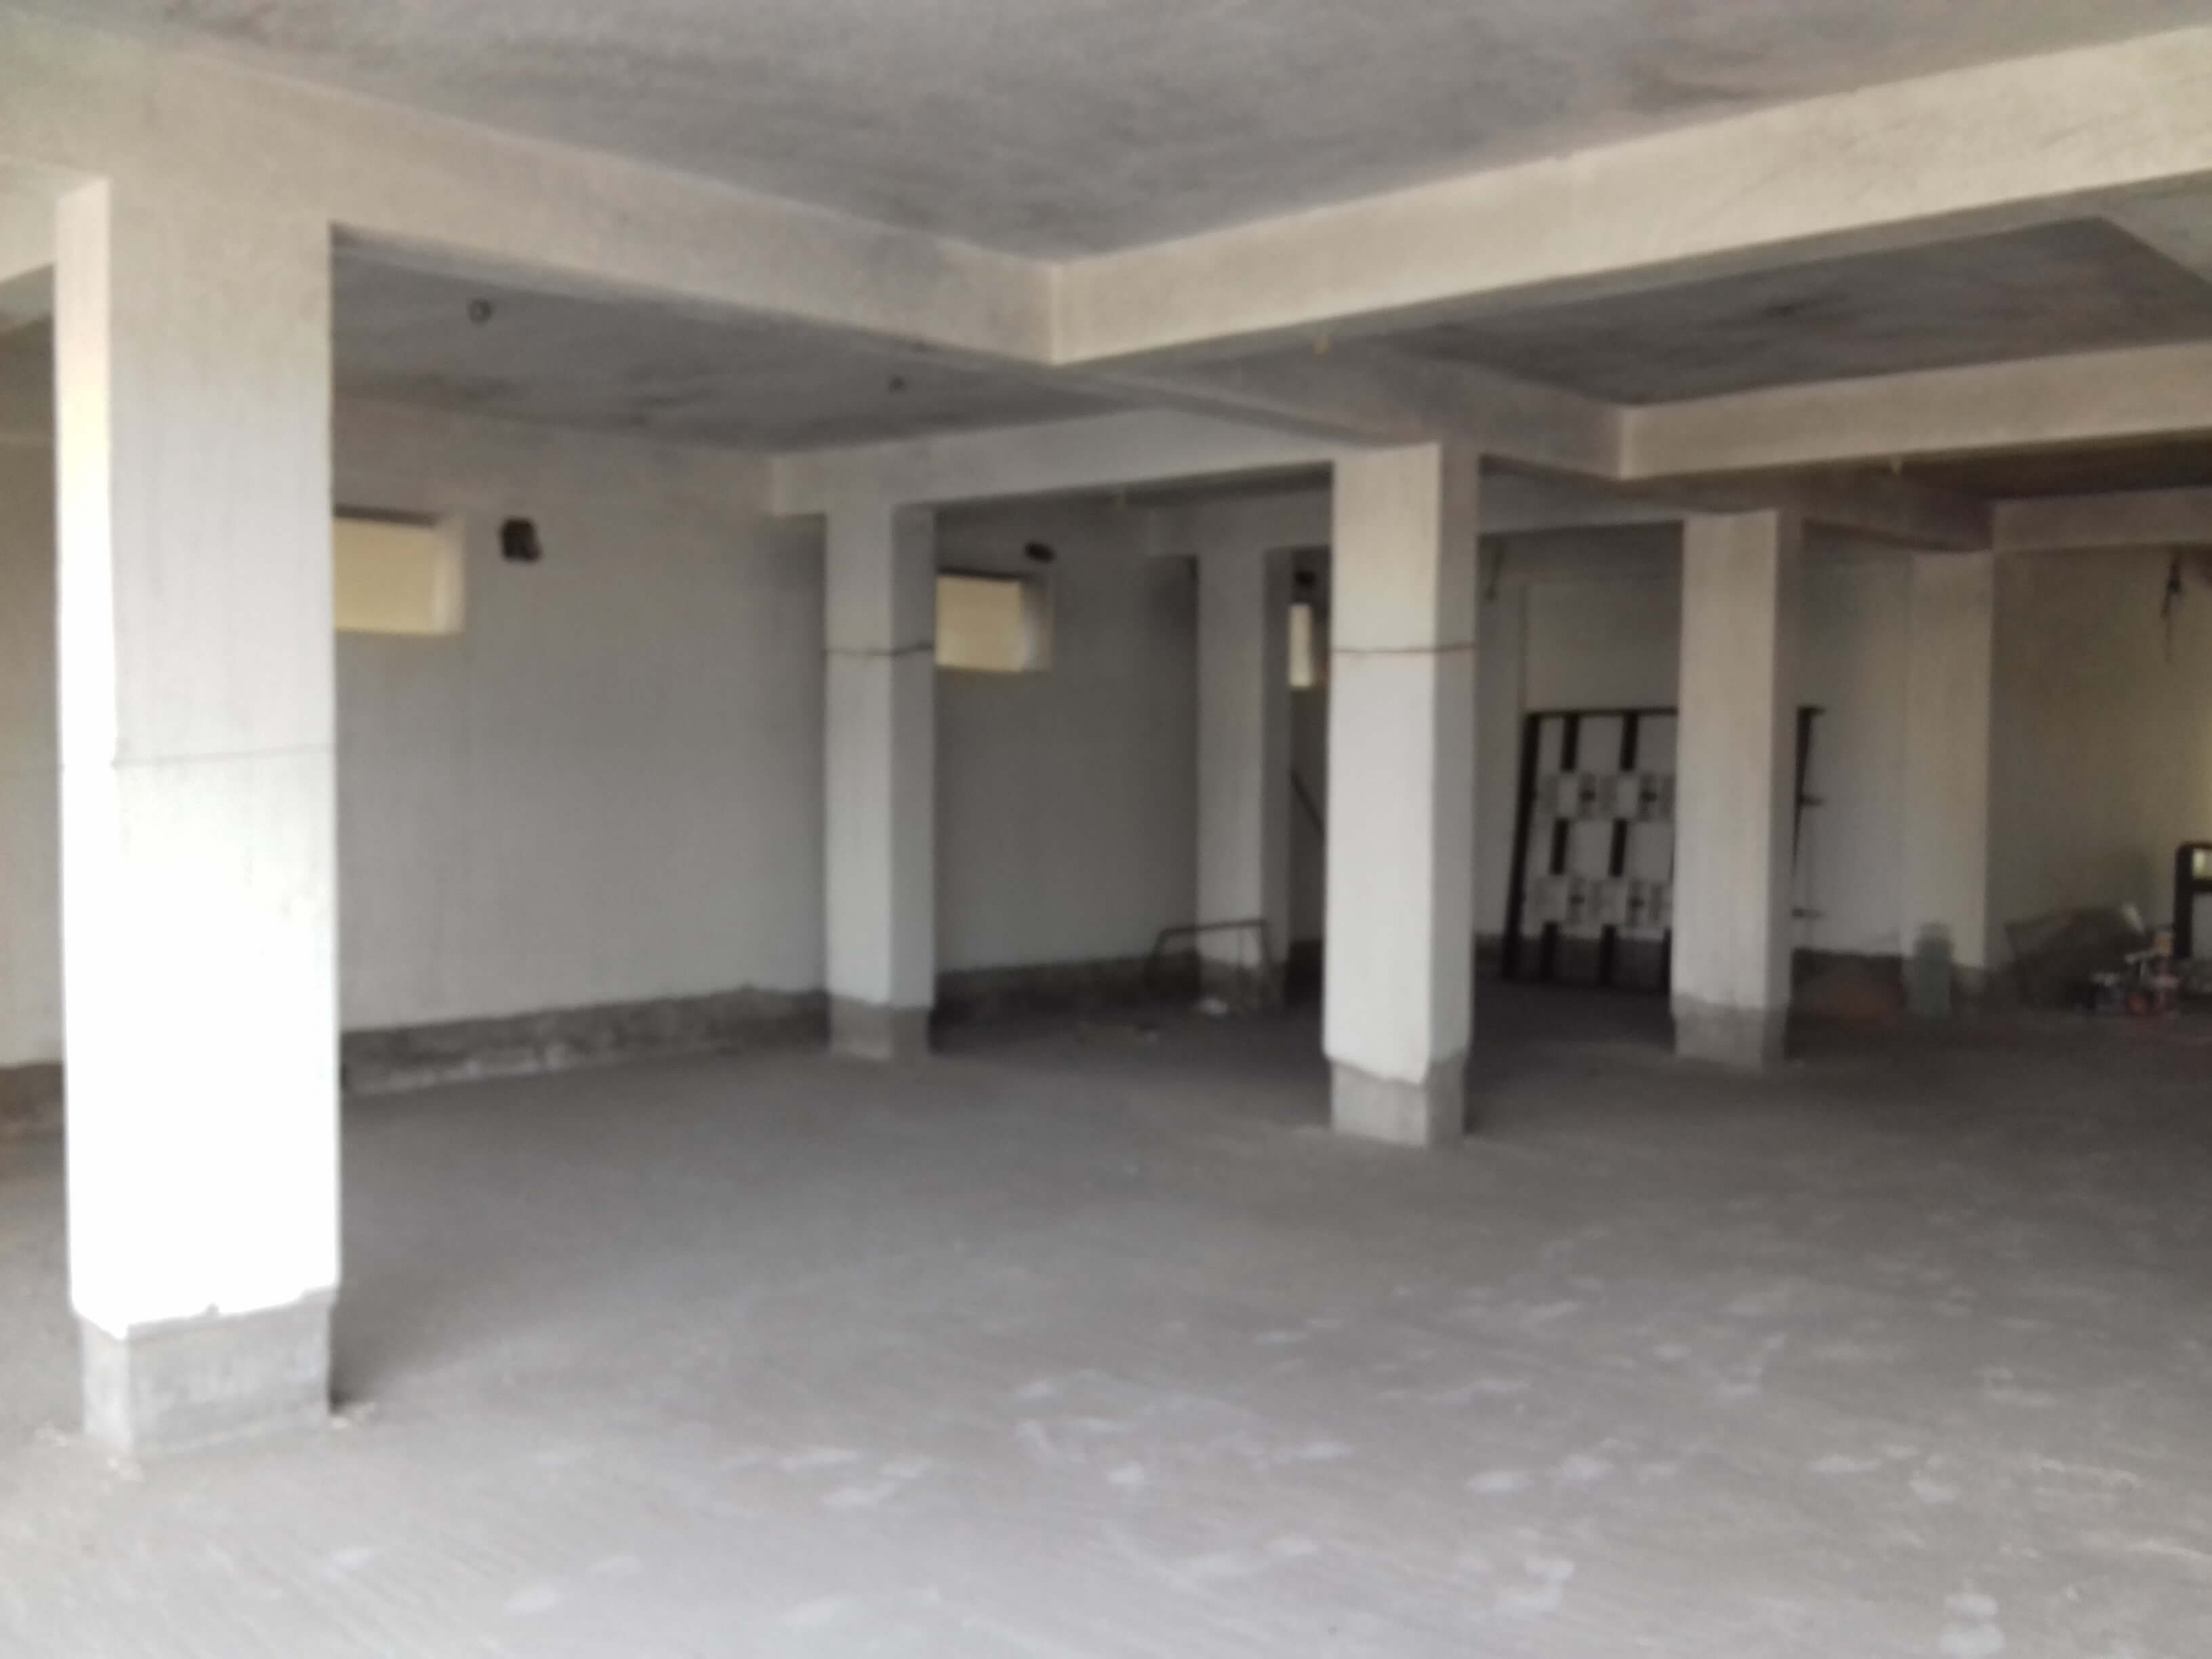 Showroom For Rent in Dankuni Hooghly (Id: 8875)